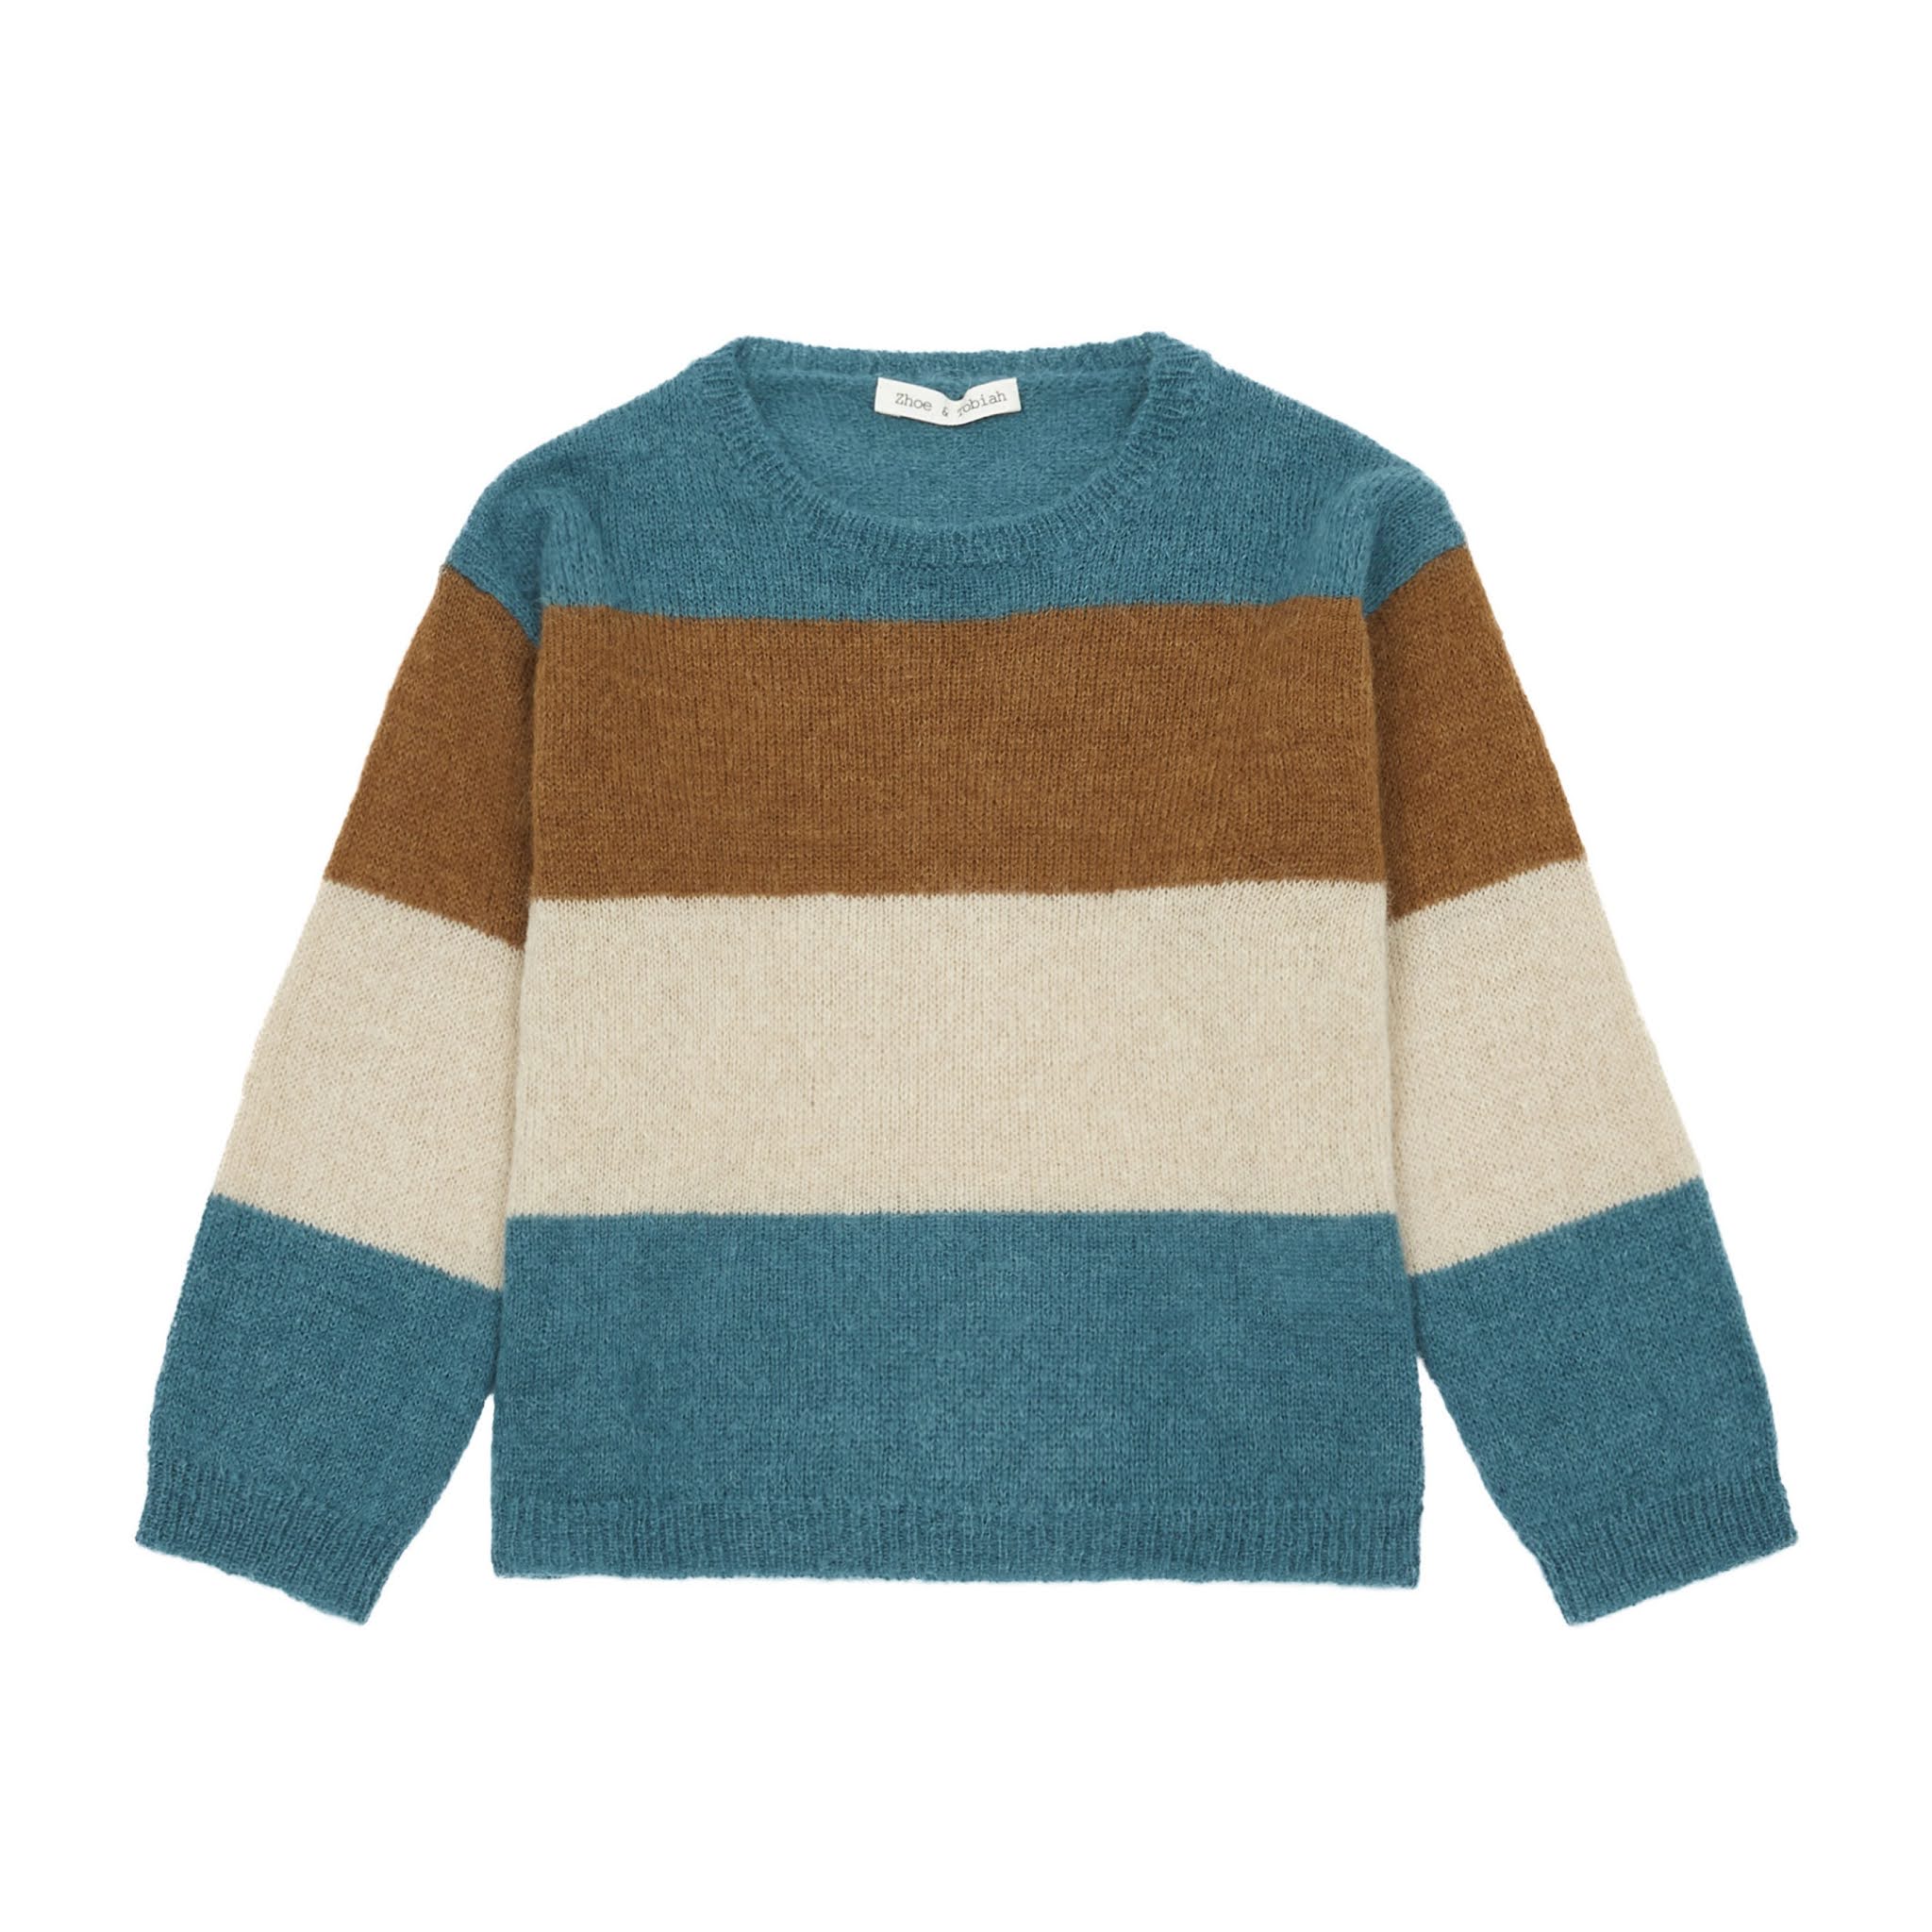 Kids Striped Wool Sweater Blue from Zhoe & Tobiah